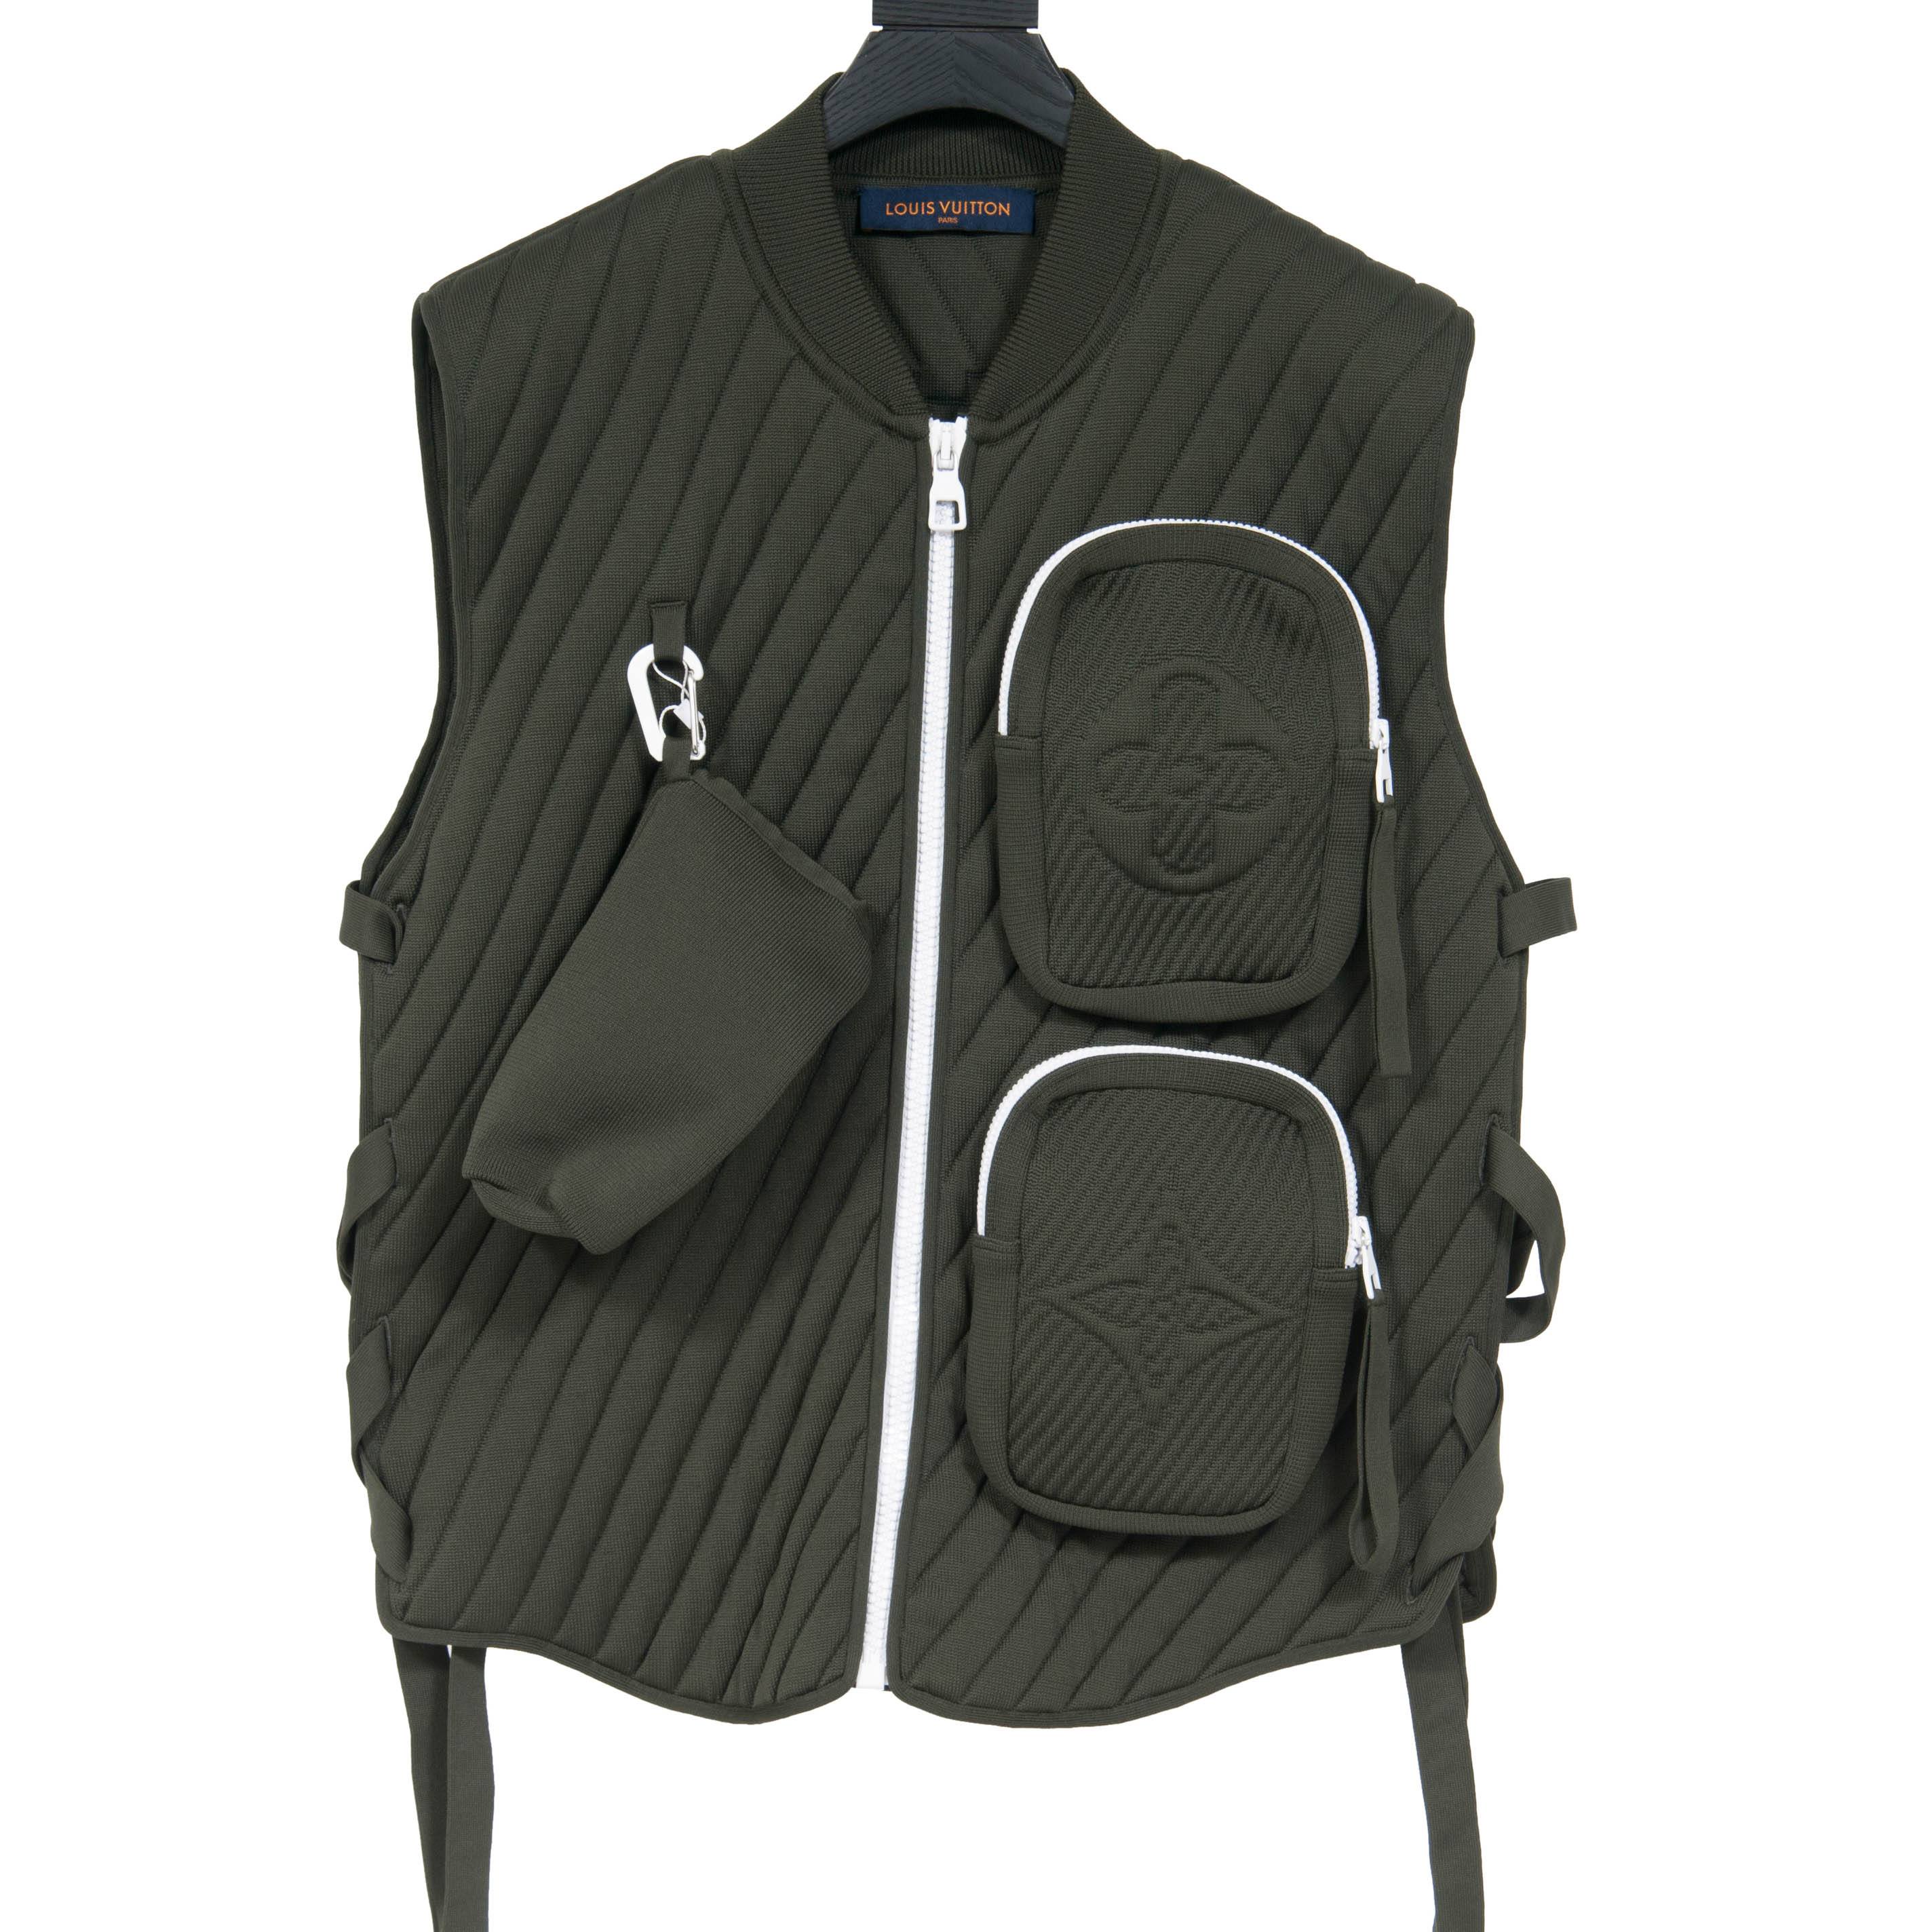 New Authentic Louis Vuitton Men's Quilted Gilet Vest 48 EU - Medium